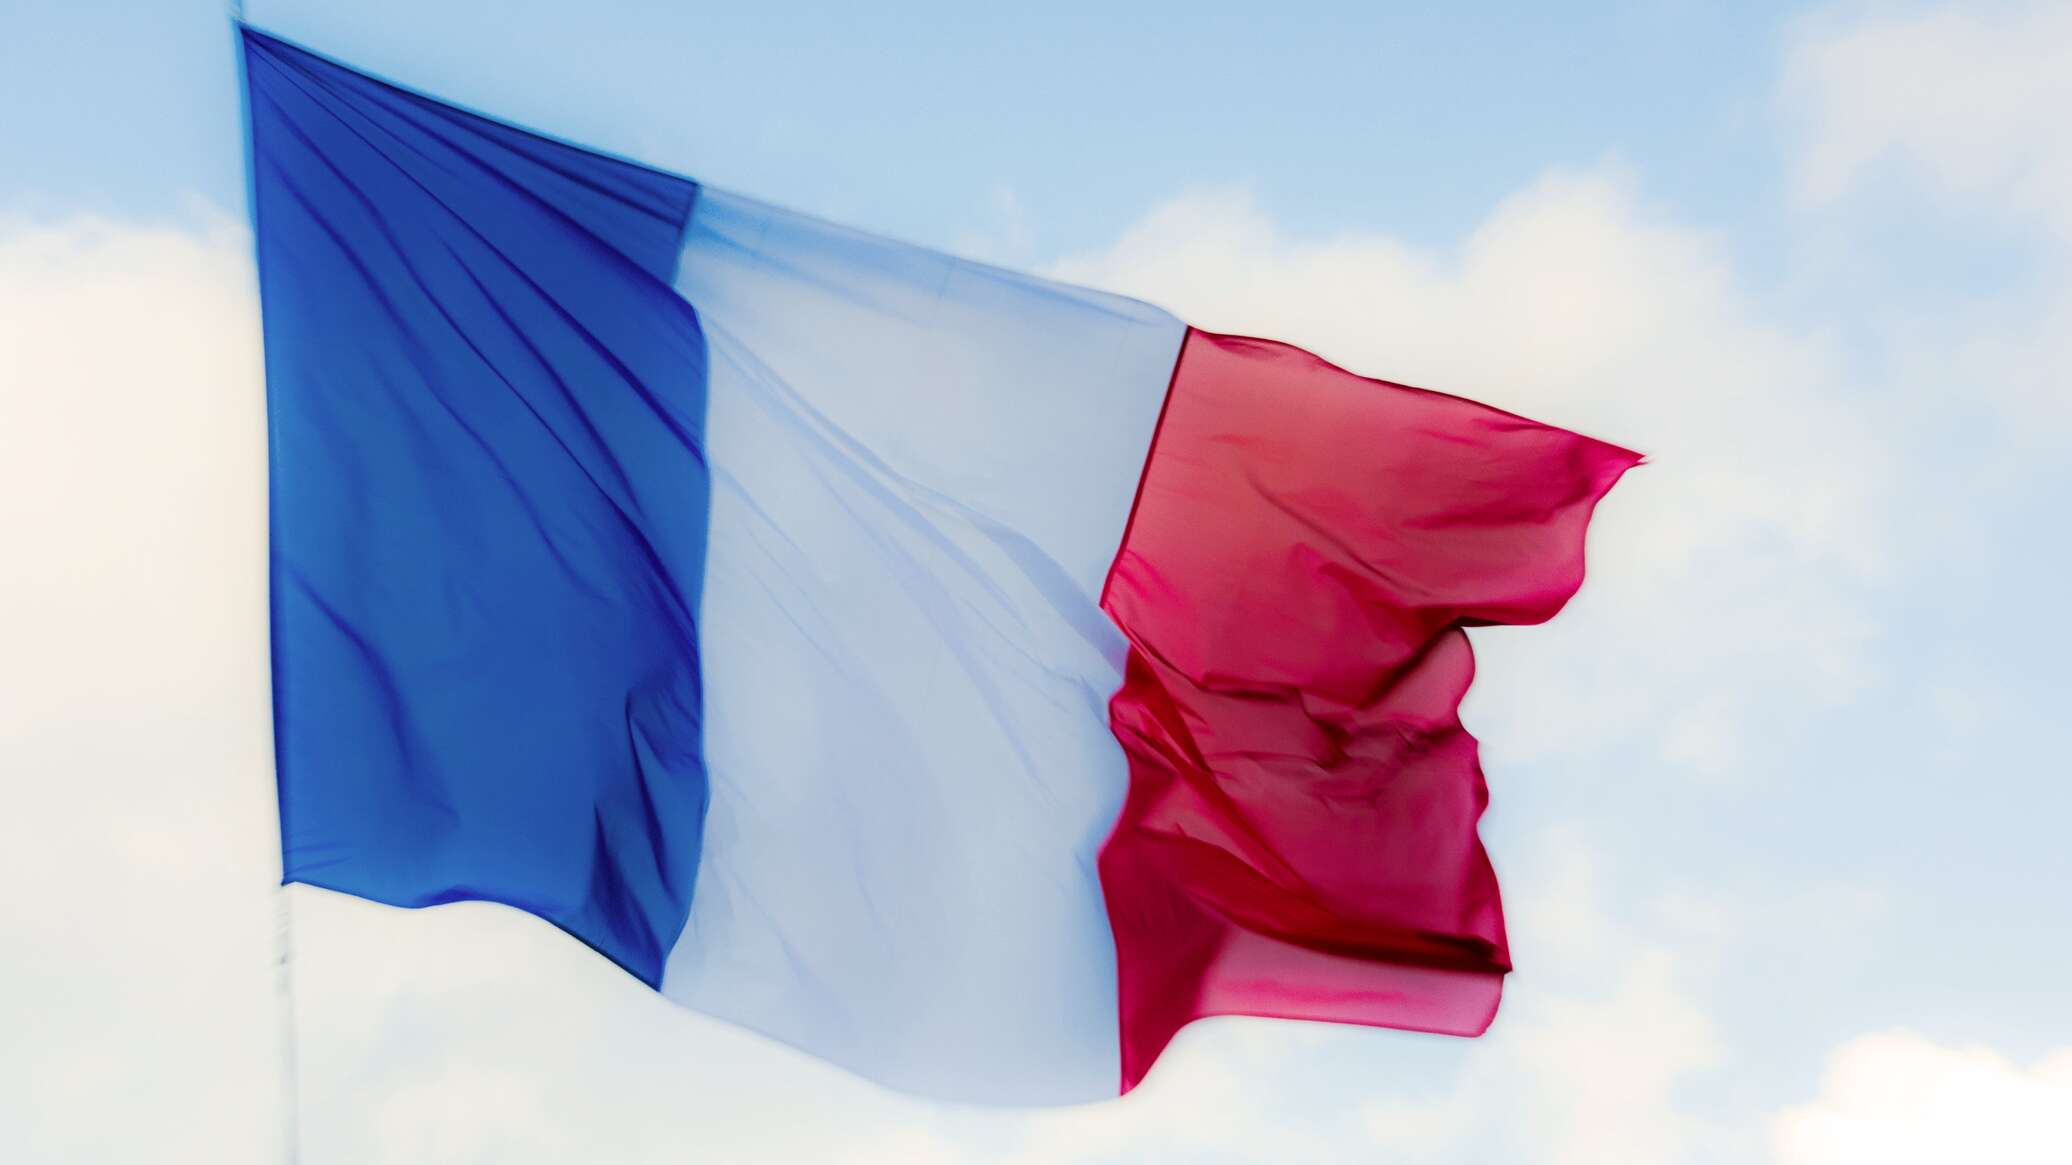 مؤسسة "ستاندرد أند بورز" تخفض نظرتها المستقبلية لفرنسا إلى "سلبية"